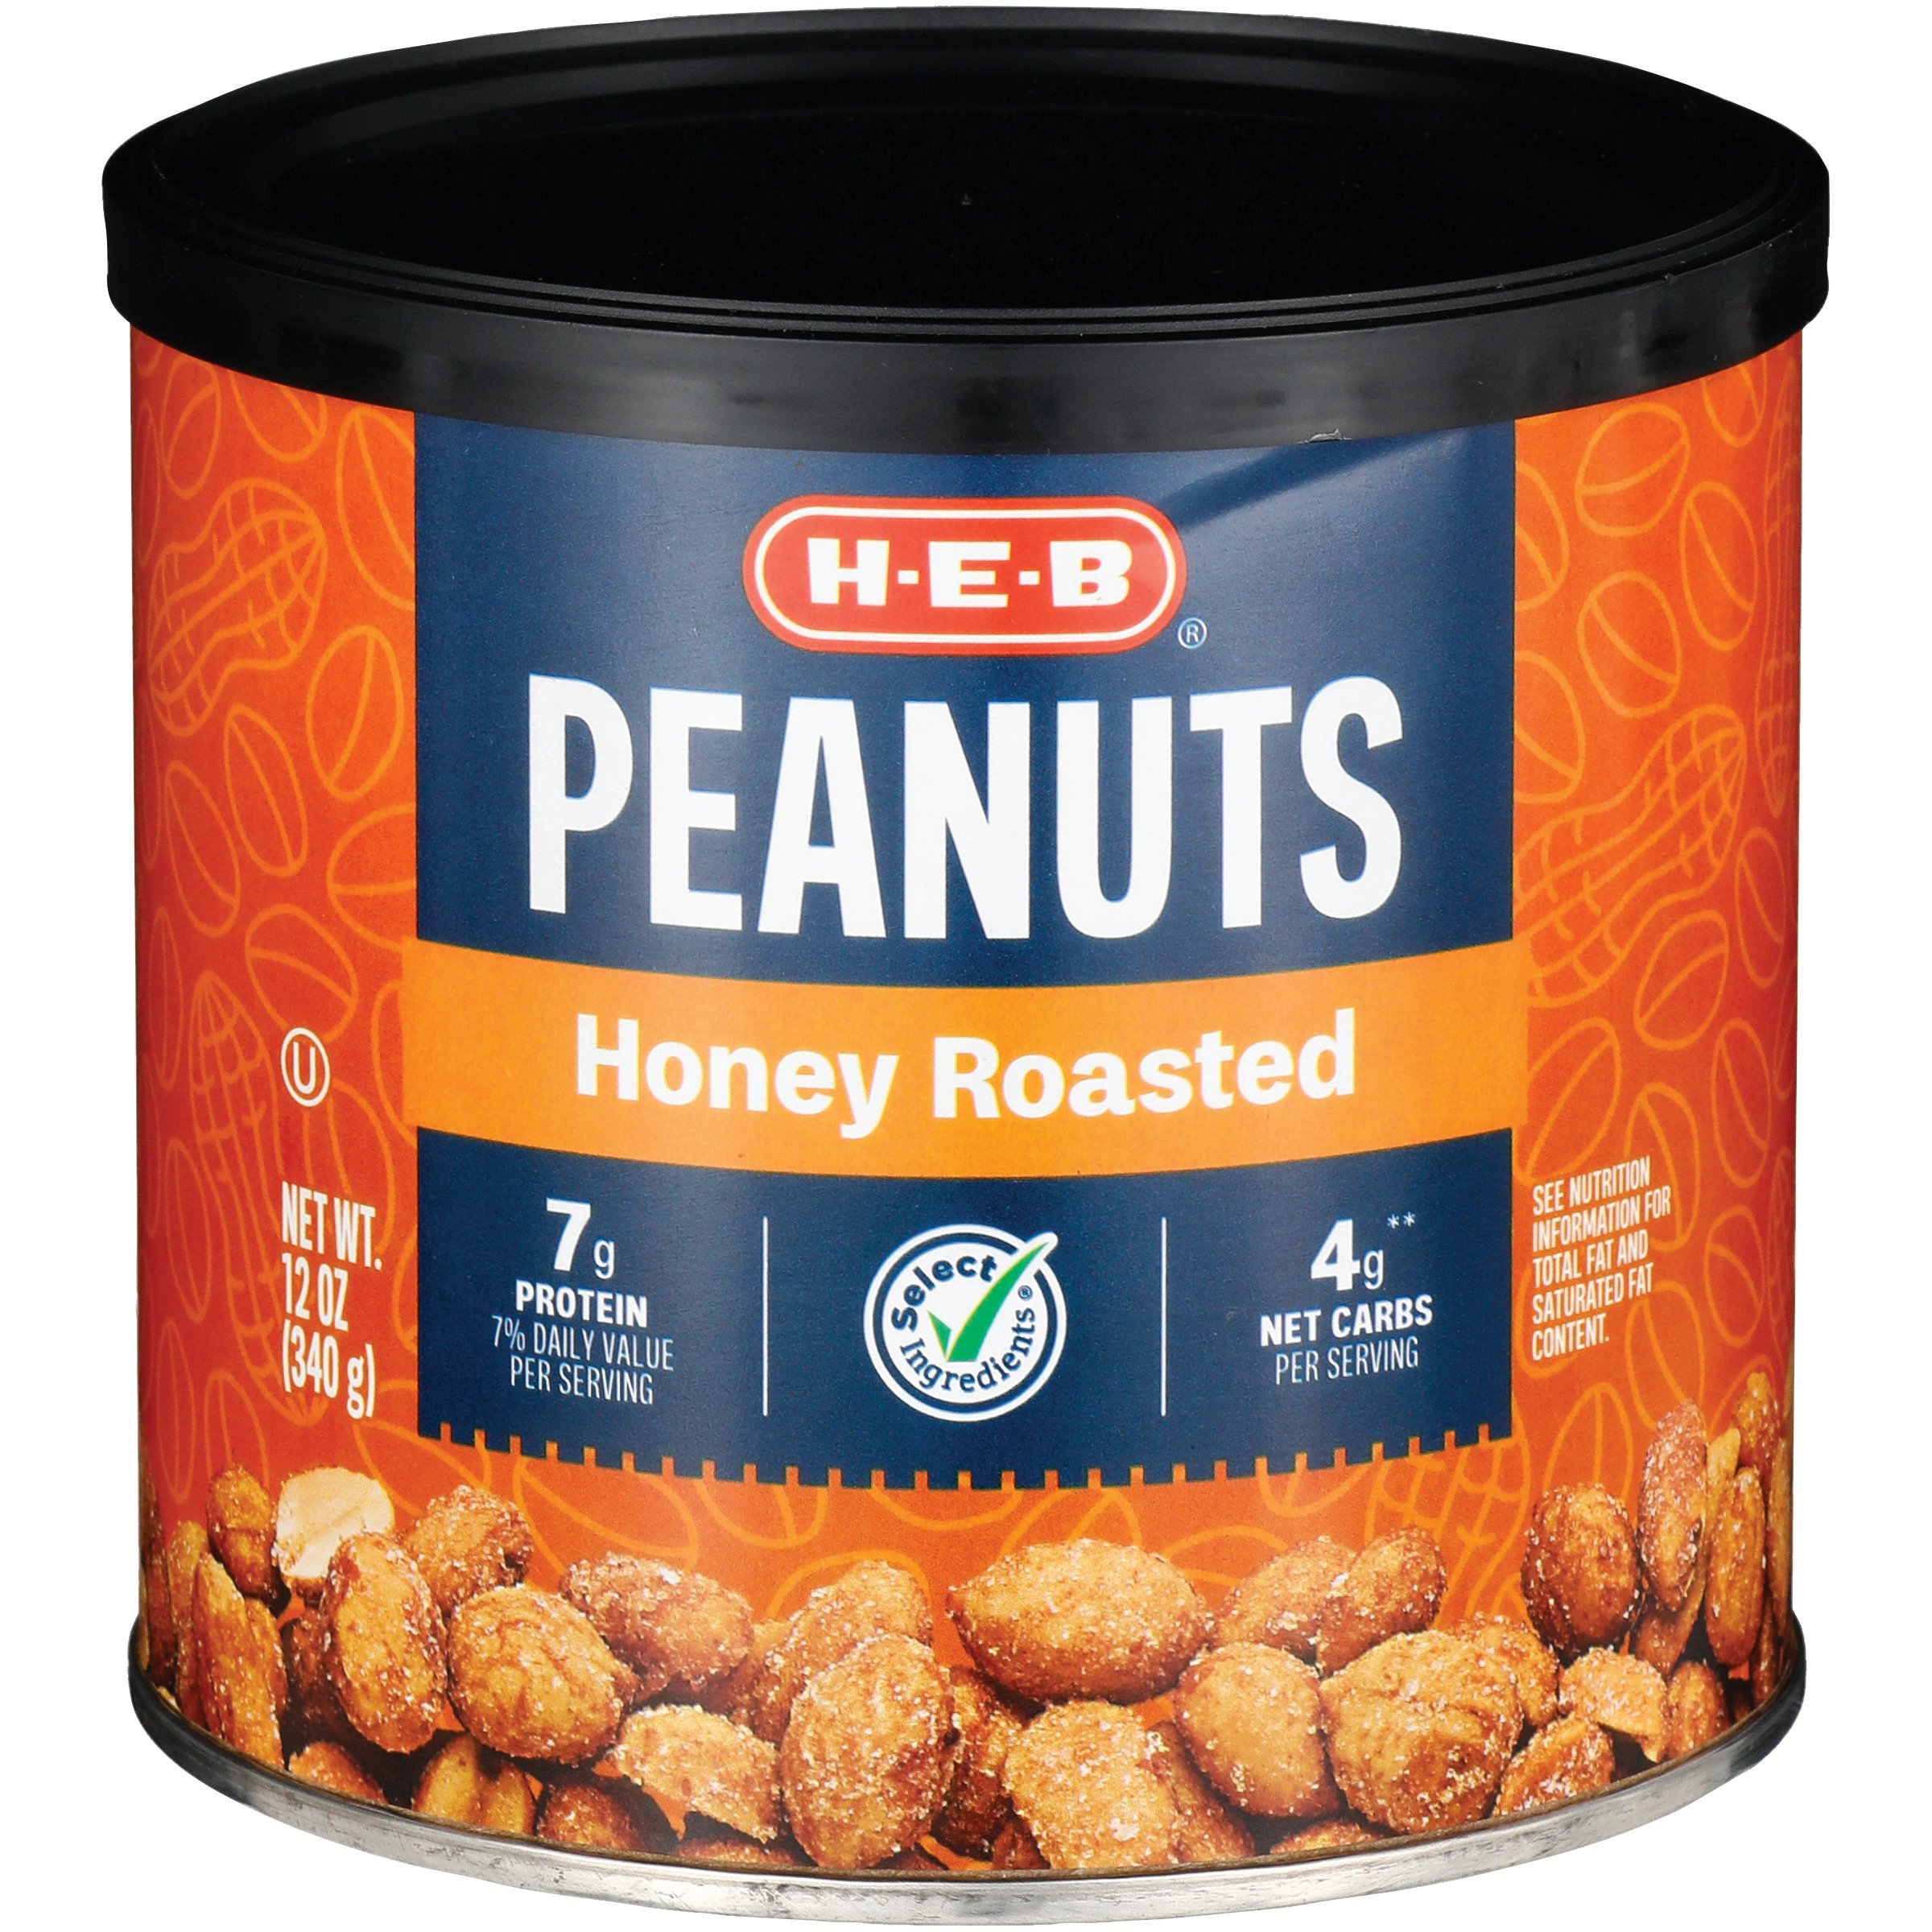 Honey Roasted Peanuts